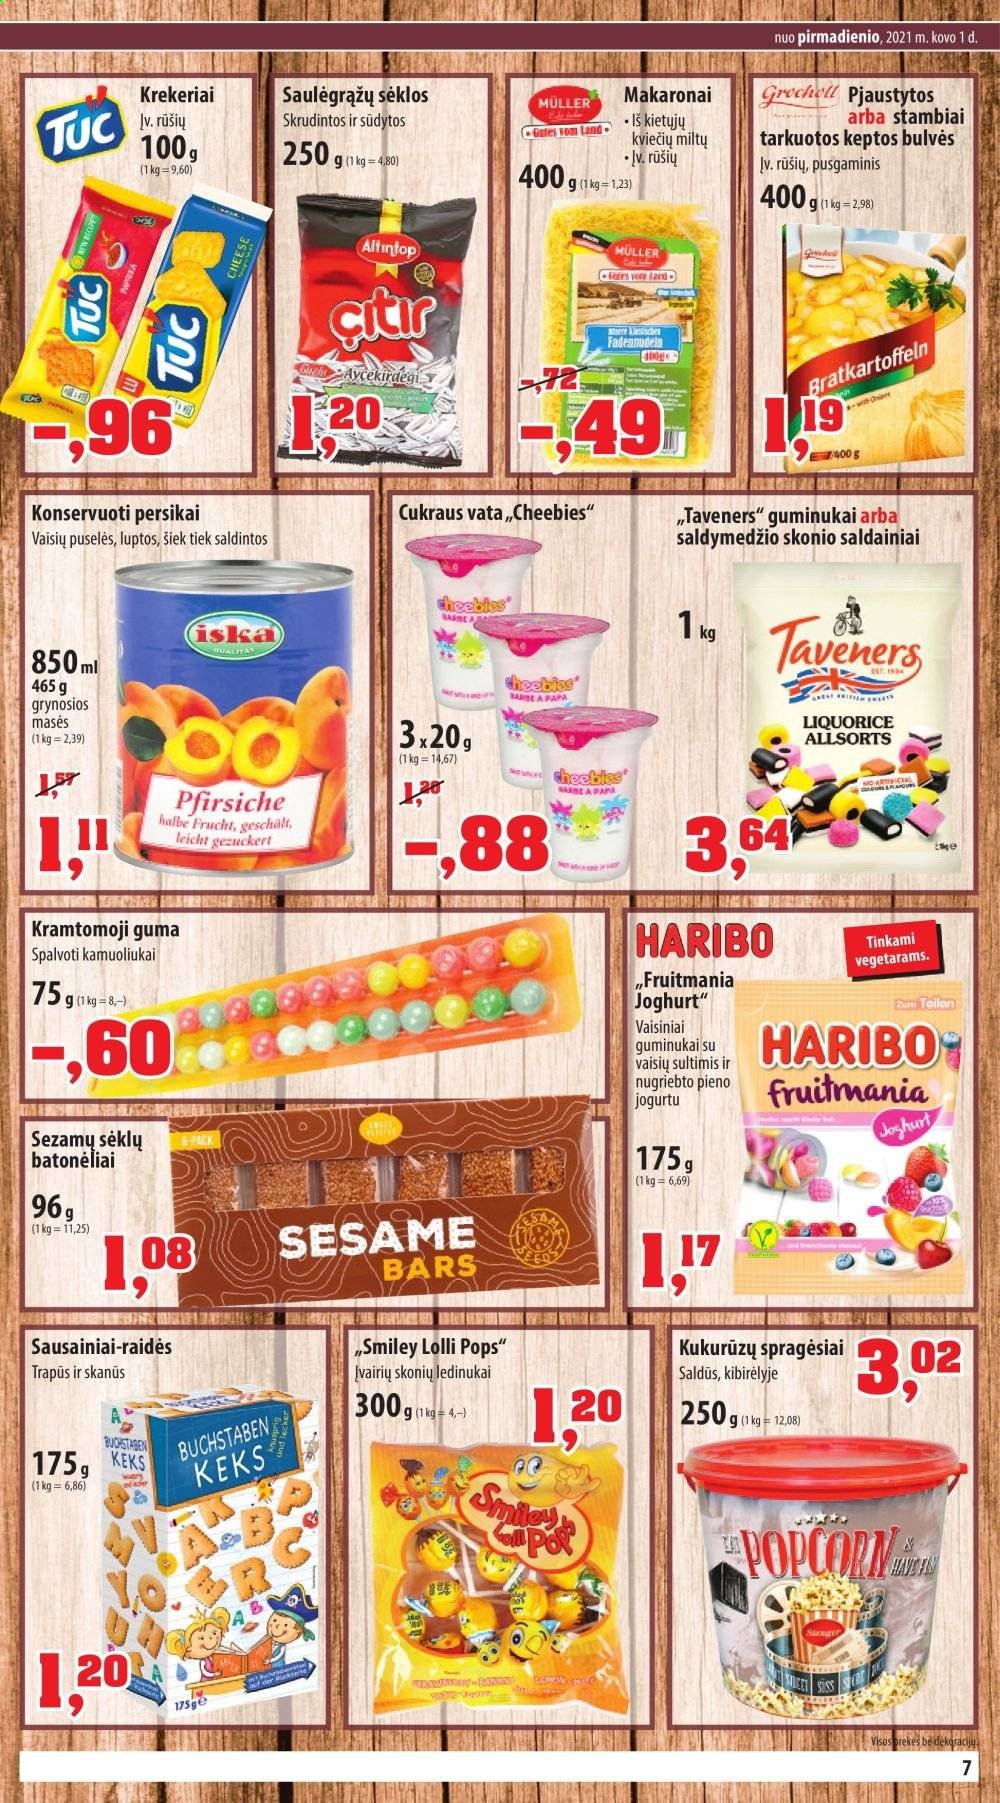 thumbnail - „Thomas Philipps“ leidinys - 2021 03 01 - 2021 03 06 - Išpardavimų produktai - bulvės, persikai, saldainiai, sausainiai, Vata. 7 puslapis.